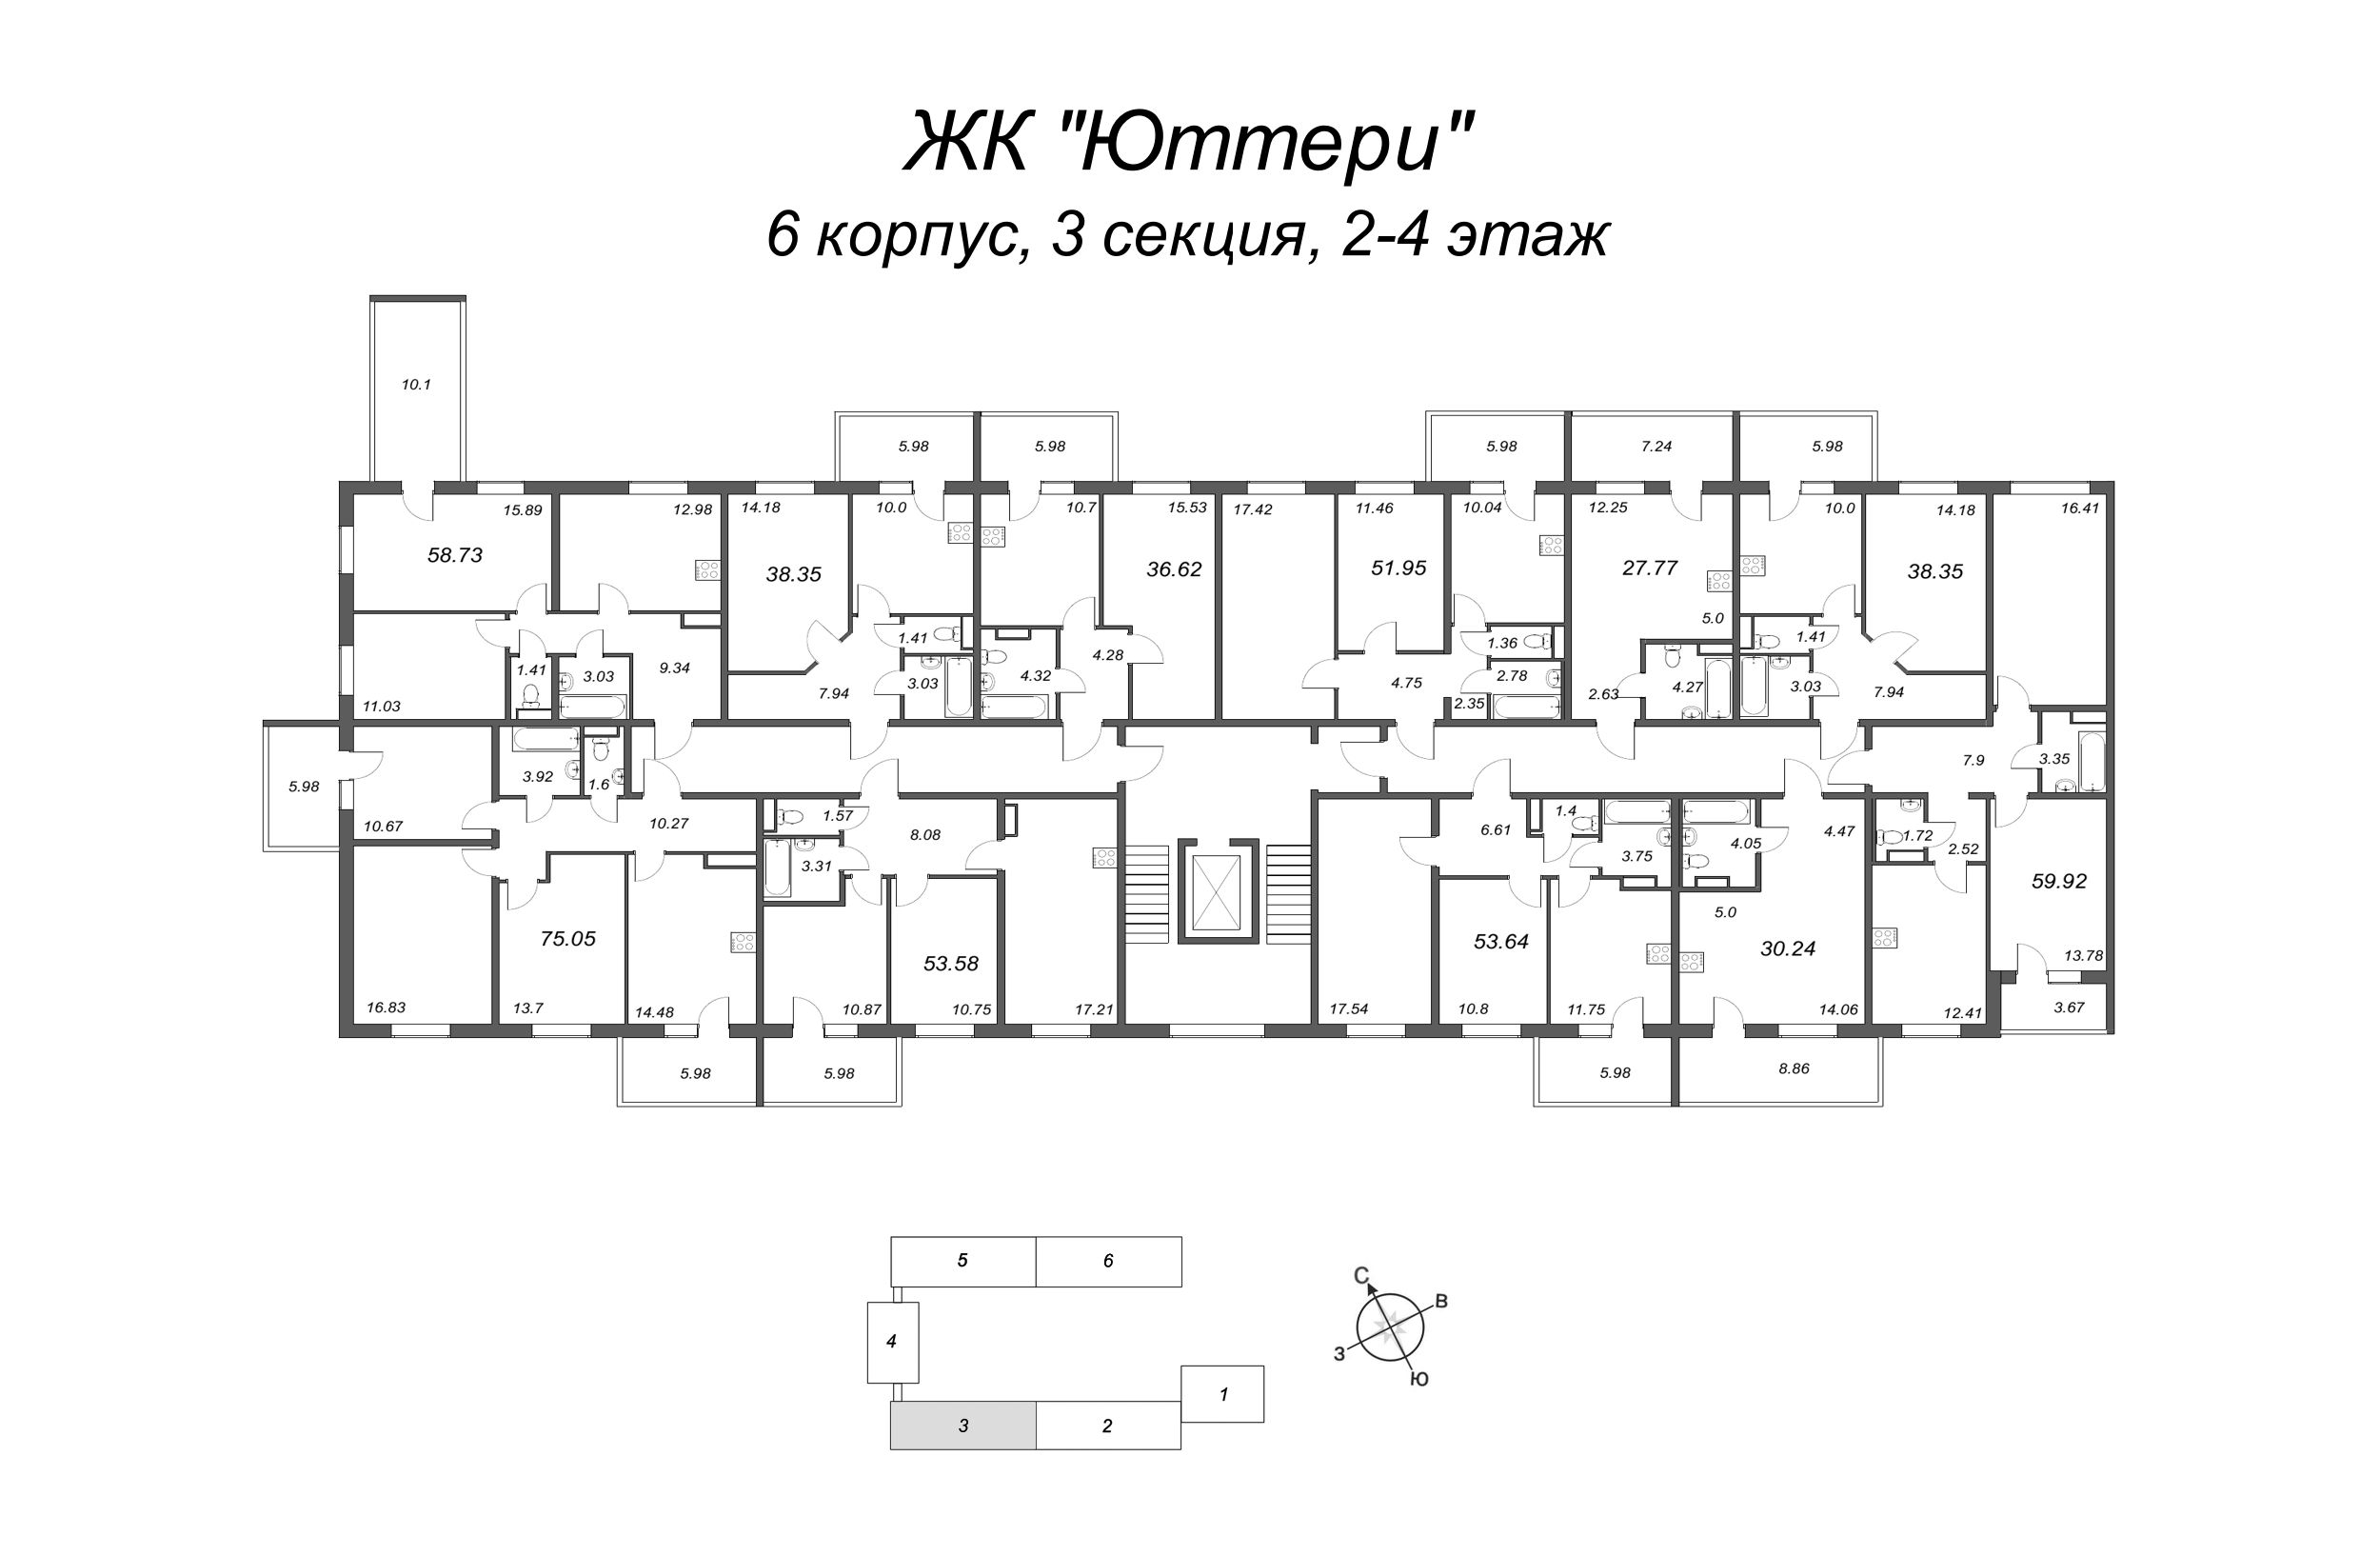 Квартира-студия, 27.58 м² в ЖК "Юттери" - планировка этажа